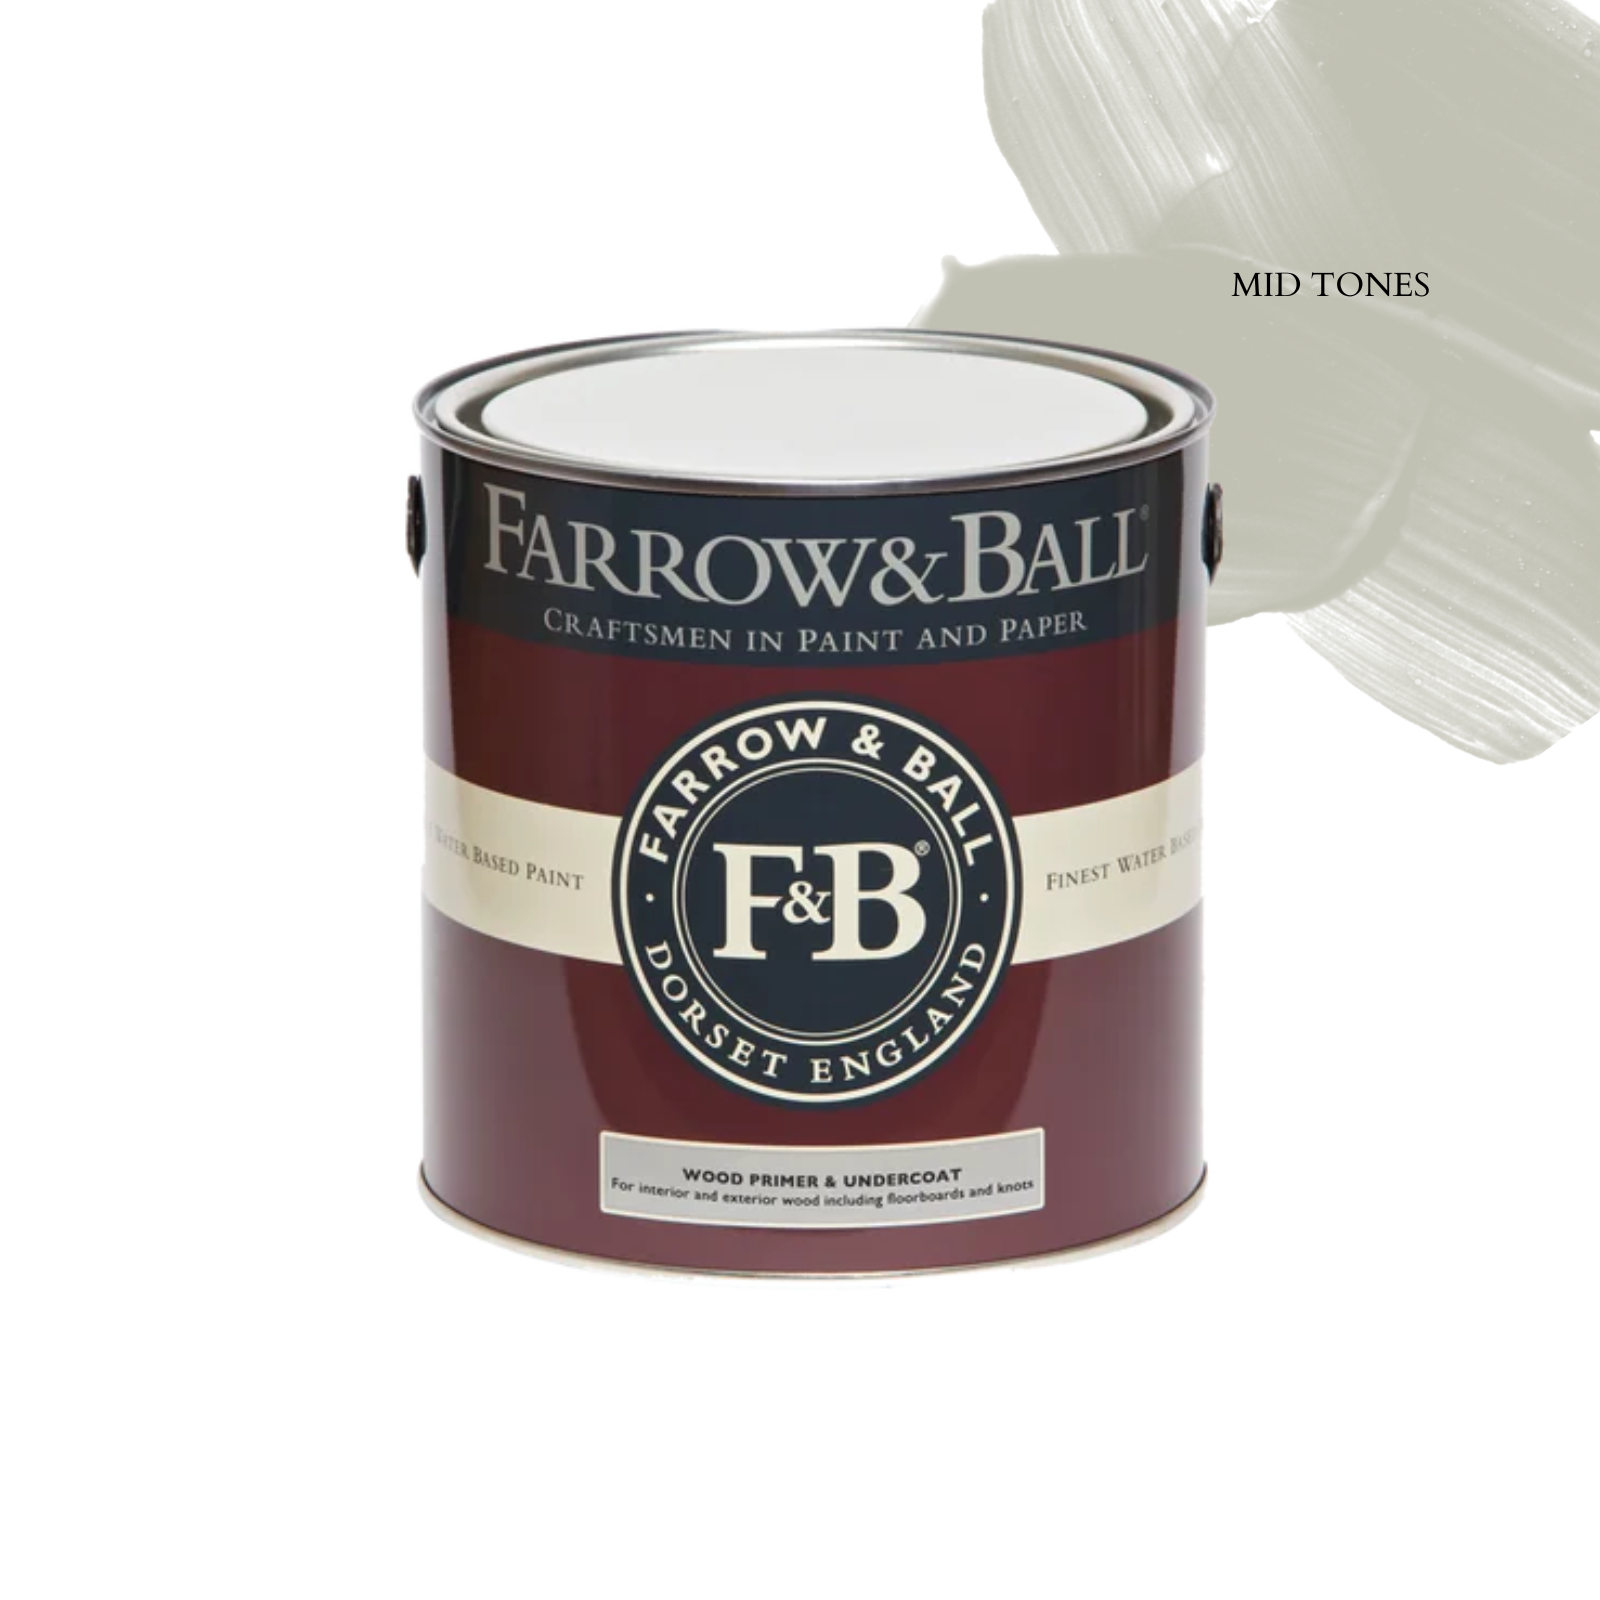 Farrow & Ball Wood Primer & Undercoat - Mid Tones